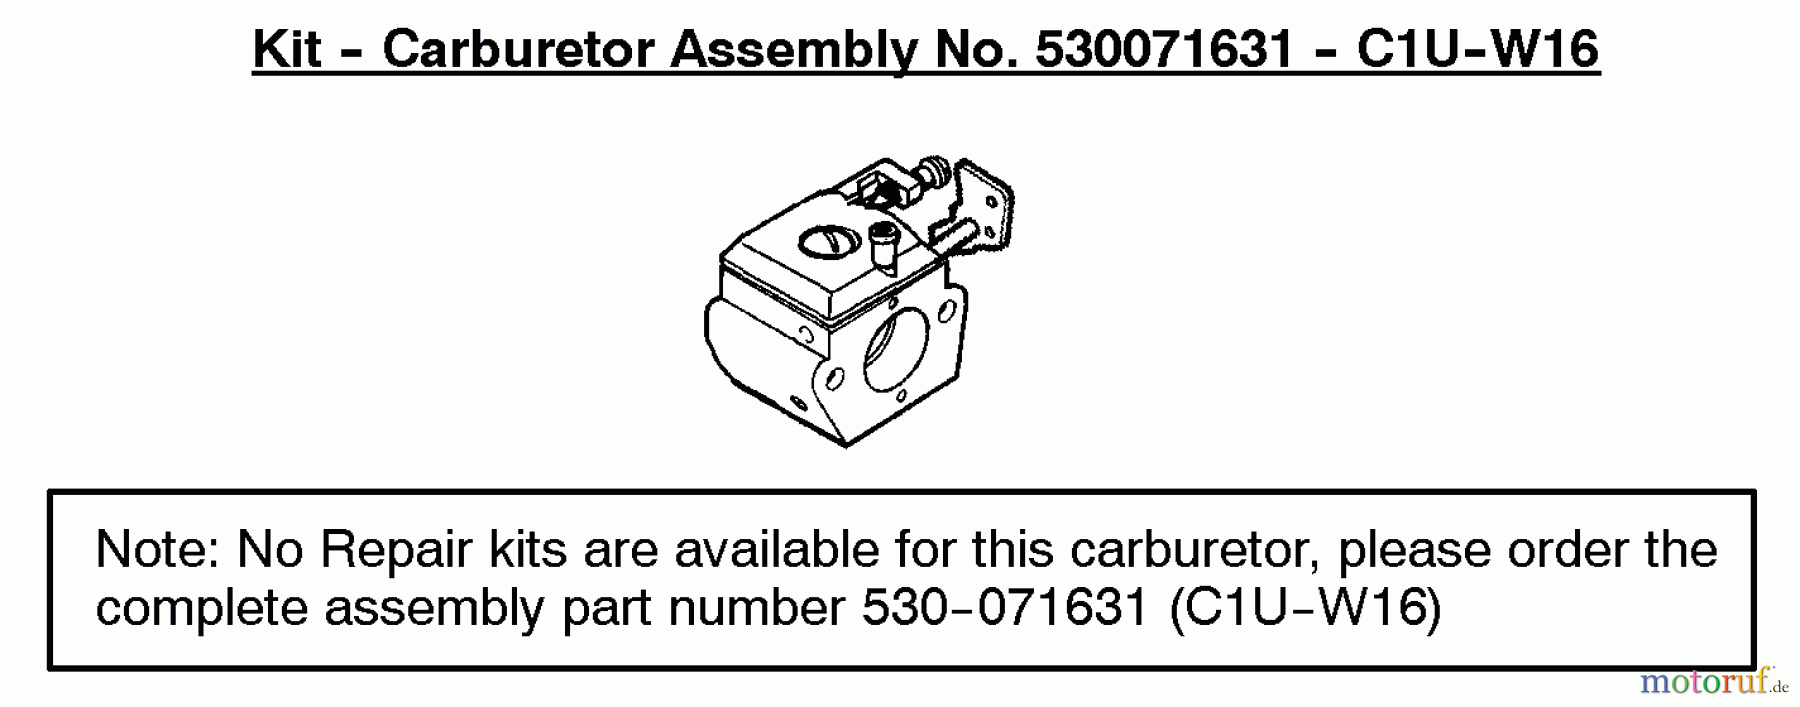  Poulan / Weed Eater Motorsensen, Trimmer BC2500LE (Type 2) - Weed Eater String Trimmer Carburetor Assembly (C1U-W16) 530071631